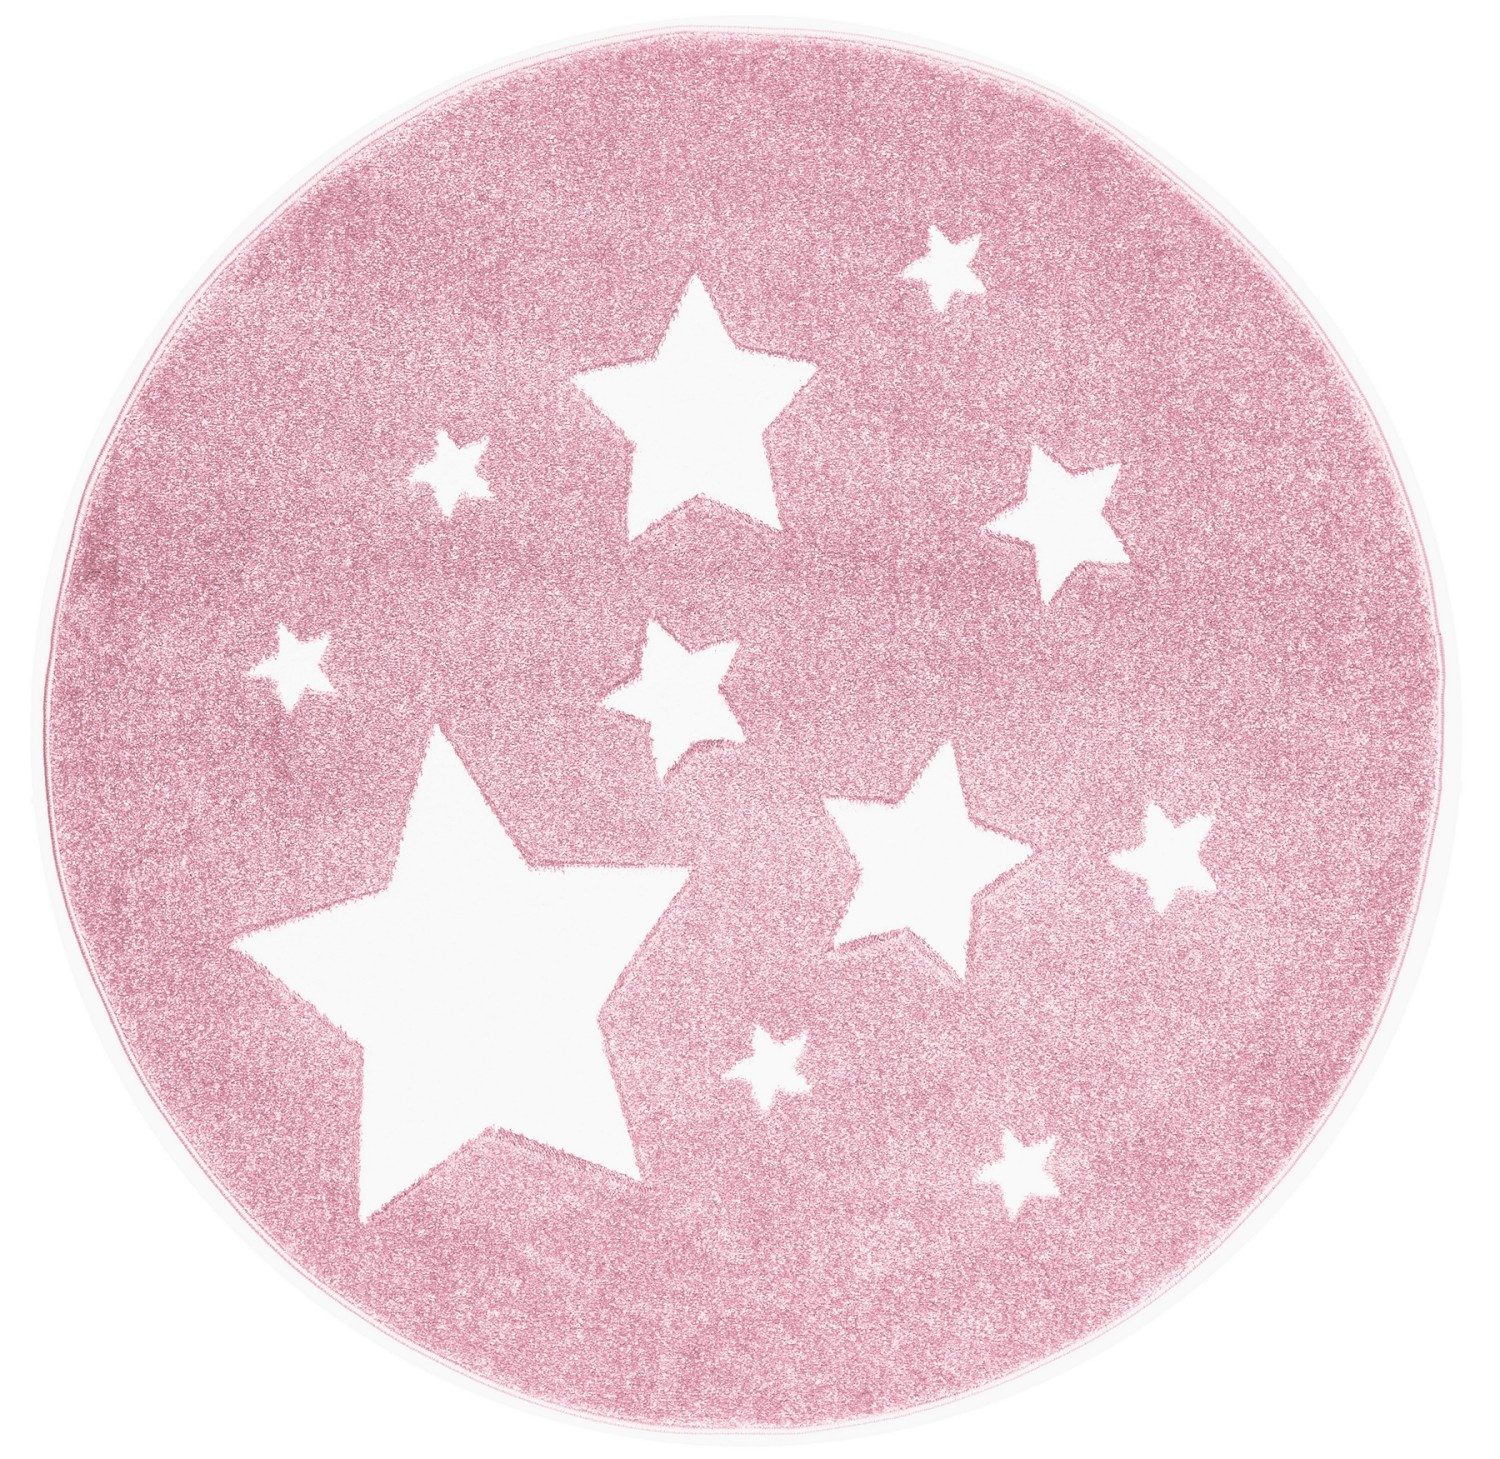 Kinderteppich Spielteppich, Sterne rosa, rund, Ø 133 cm, 18 mm hoch, Scandicliving, rund